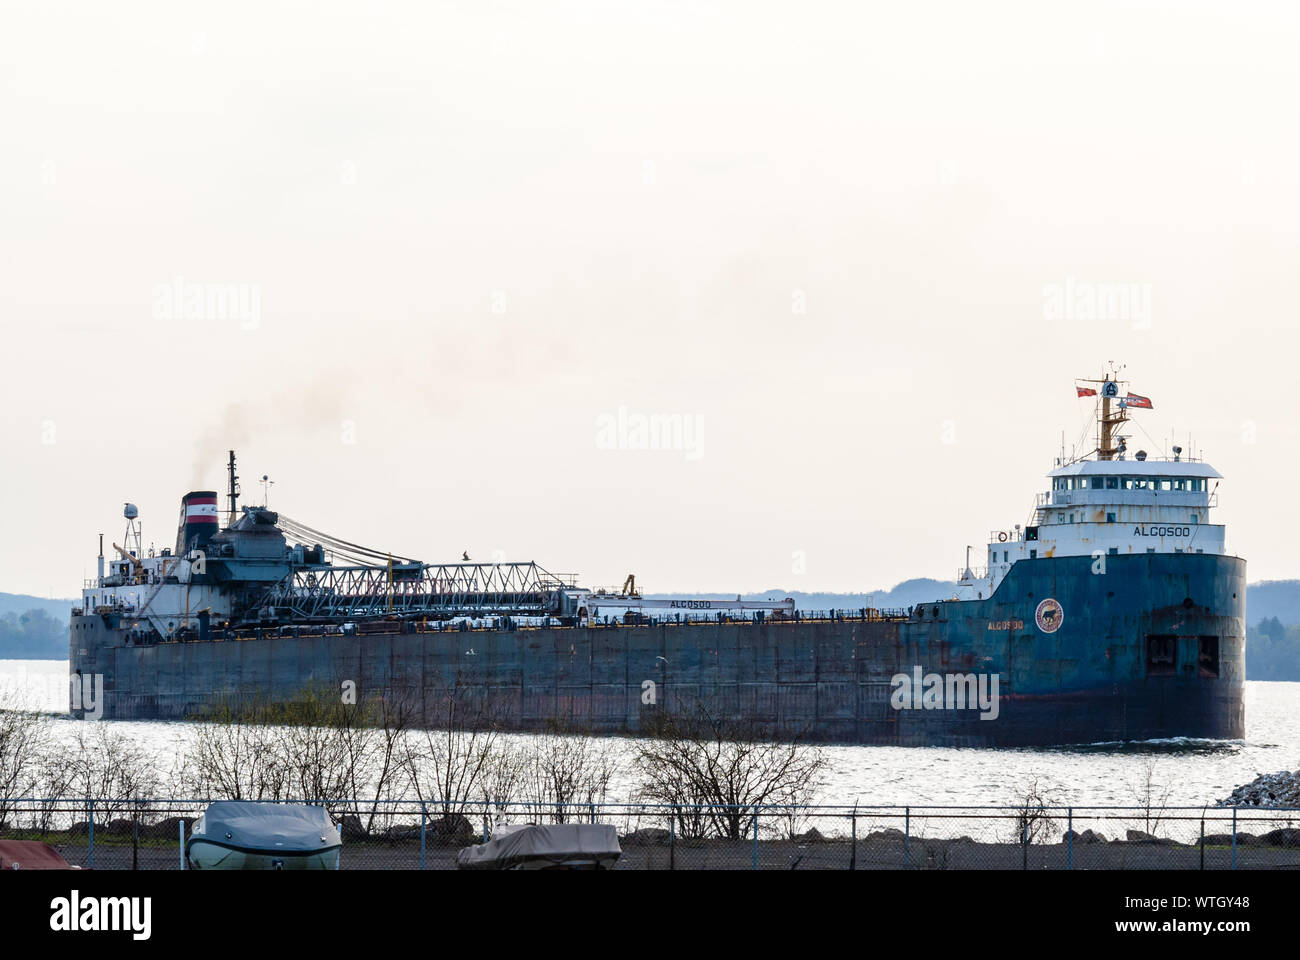 HAMILTON, Canada - 11 Maggio 2014: l'auto lo scarico di grandi laghi rinfusa freighter Algosoo lascia il porto di Hamilton all'estremità occidentale del Lago Ontario. Foto Stock